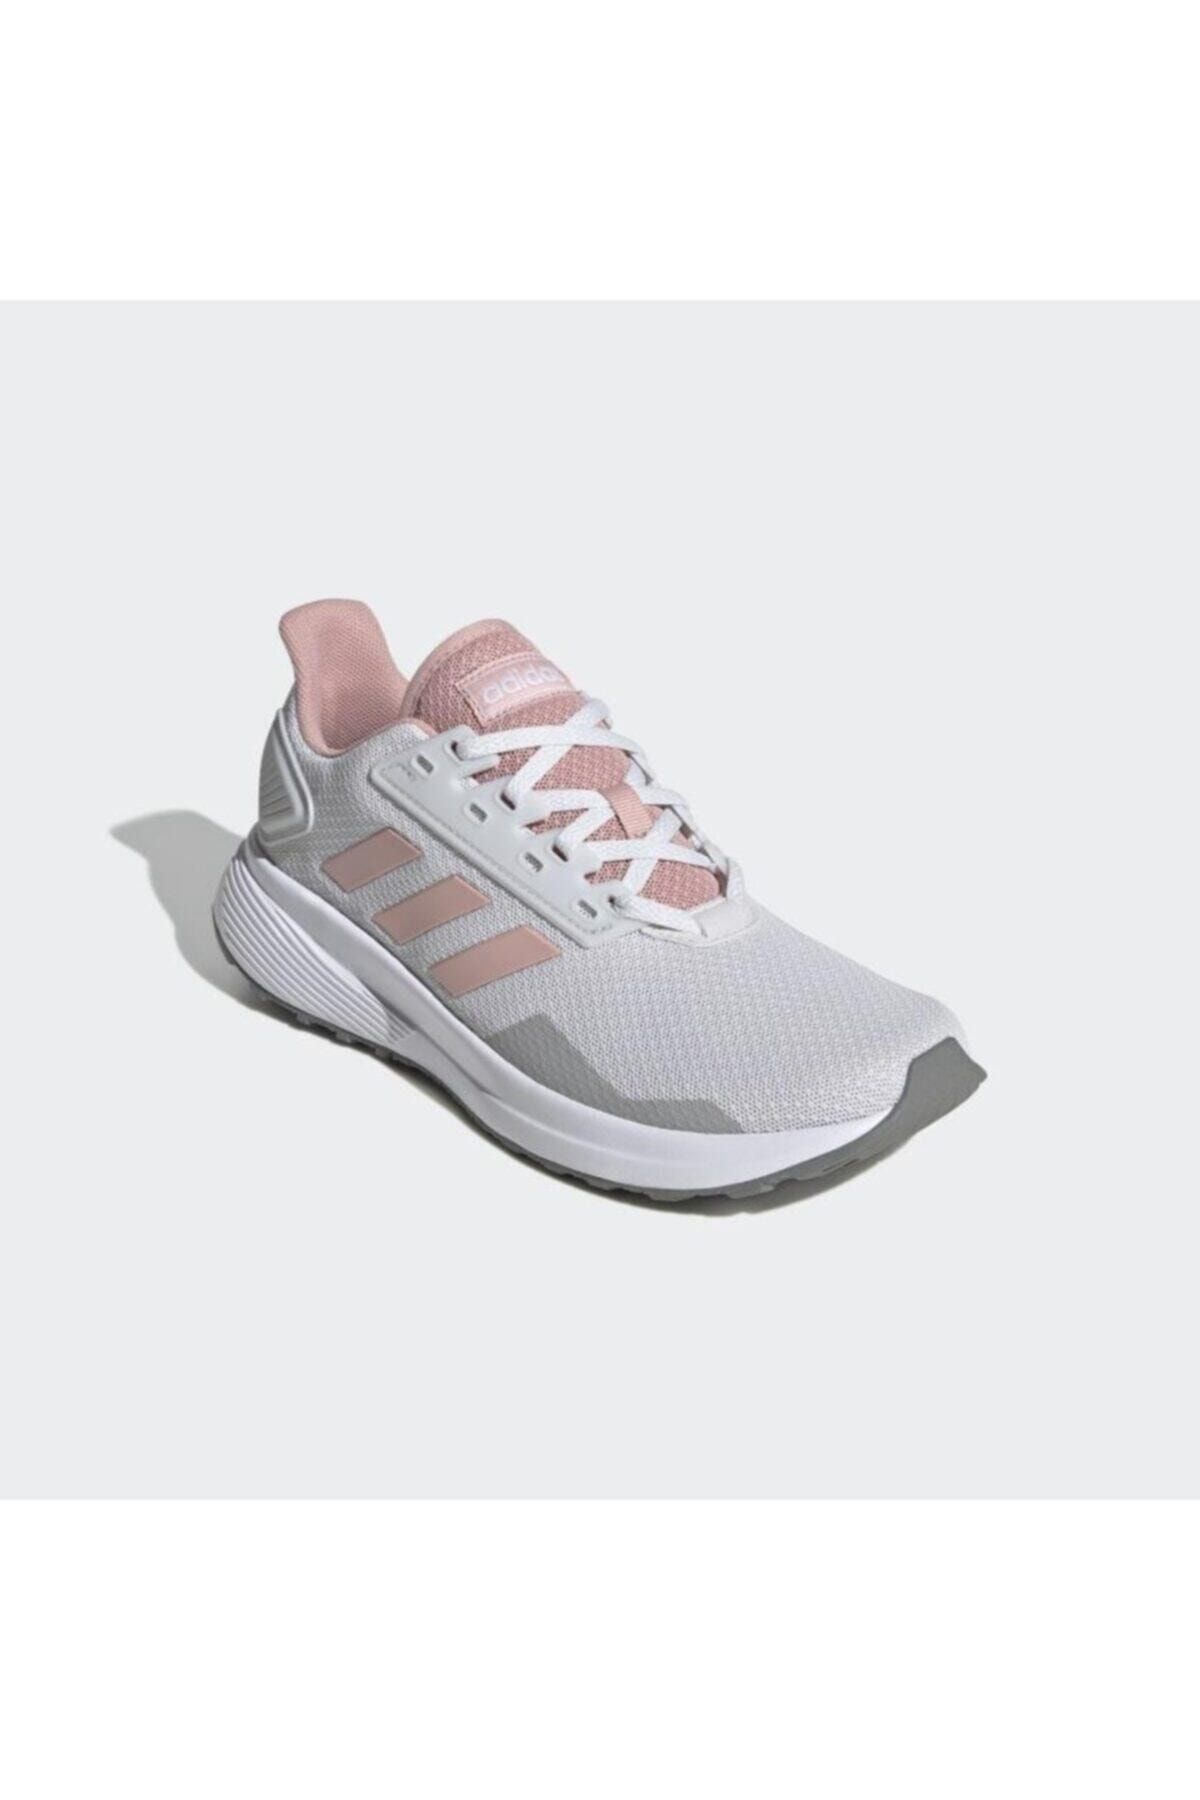 adidas Kadın Koşu Ayakkabısı Gri - Pembe Eg2938